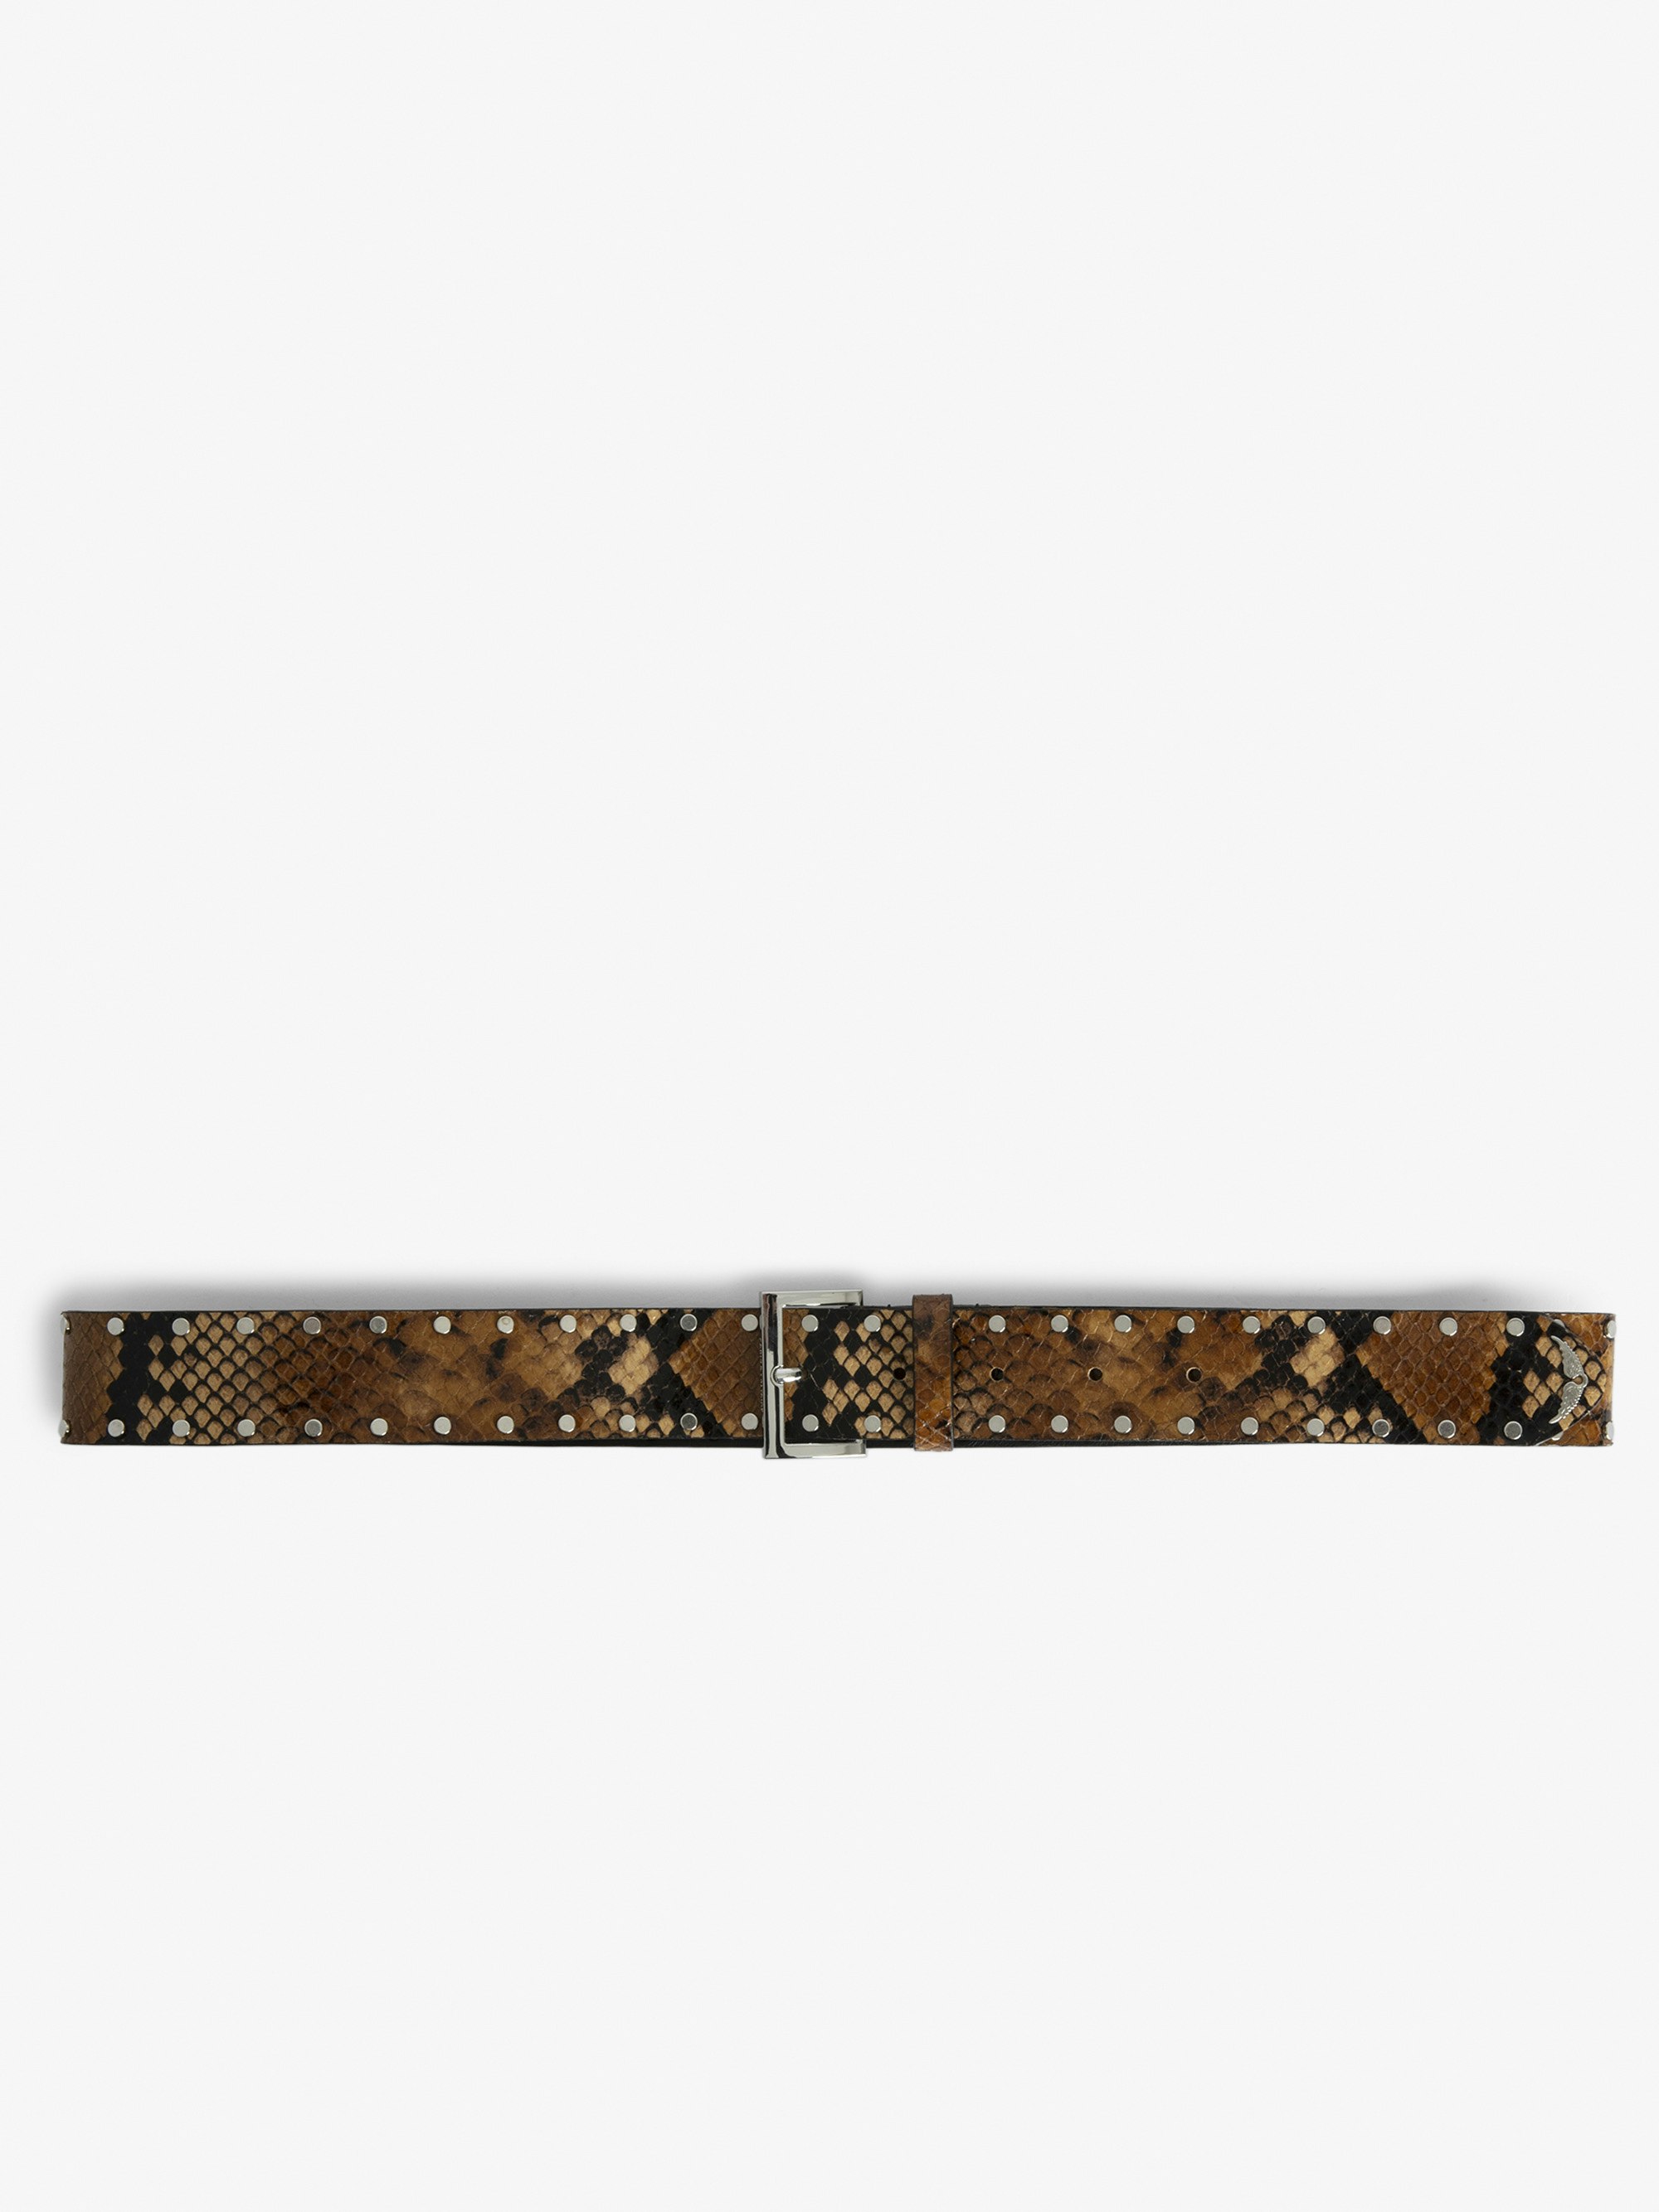 Cintura Starlight - Cintura in pelle marrone effetto serpente decorata con borchie.